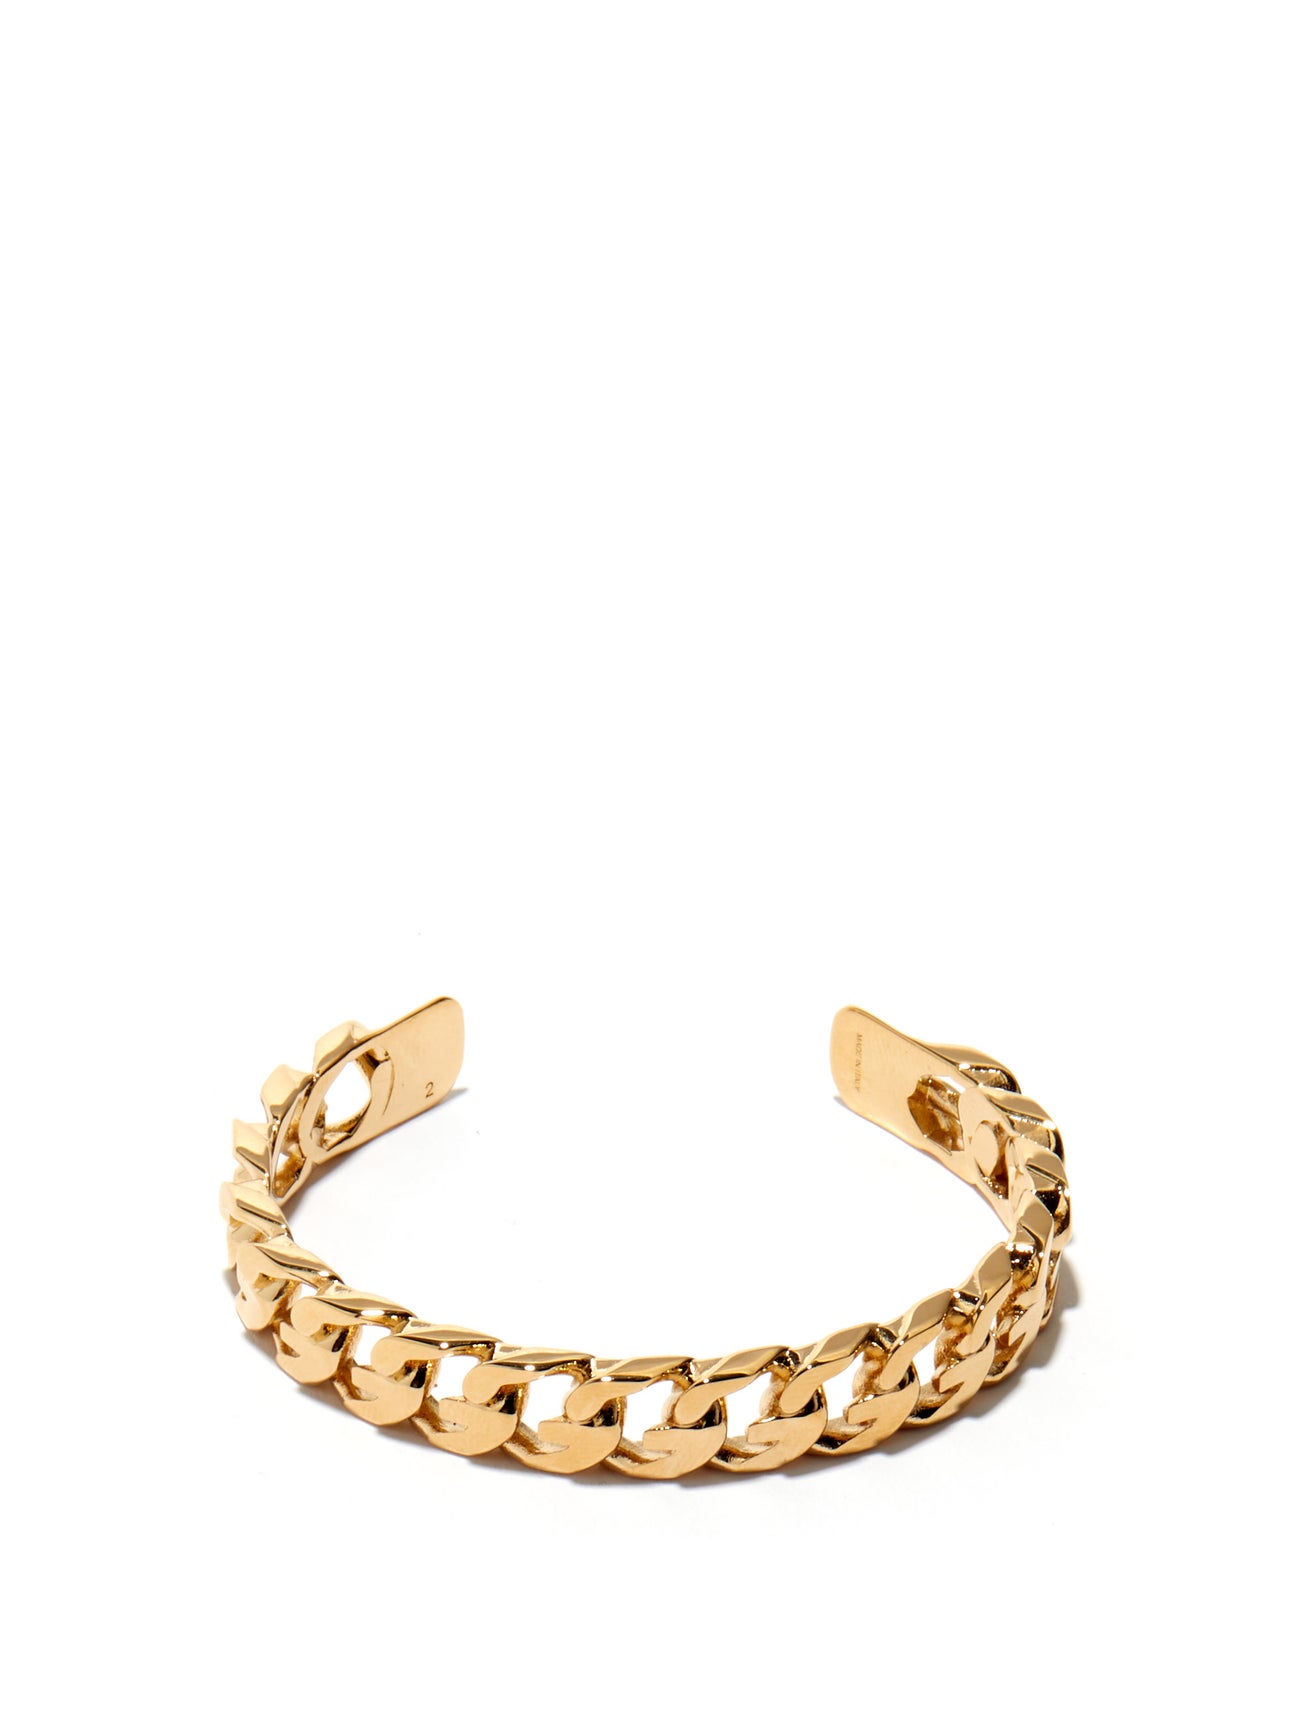 GIVENCHY G Chain bracelet £280